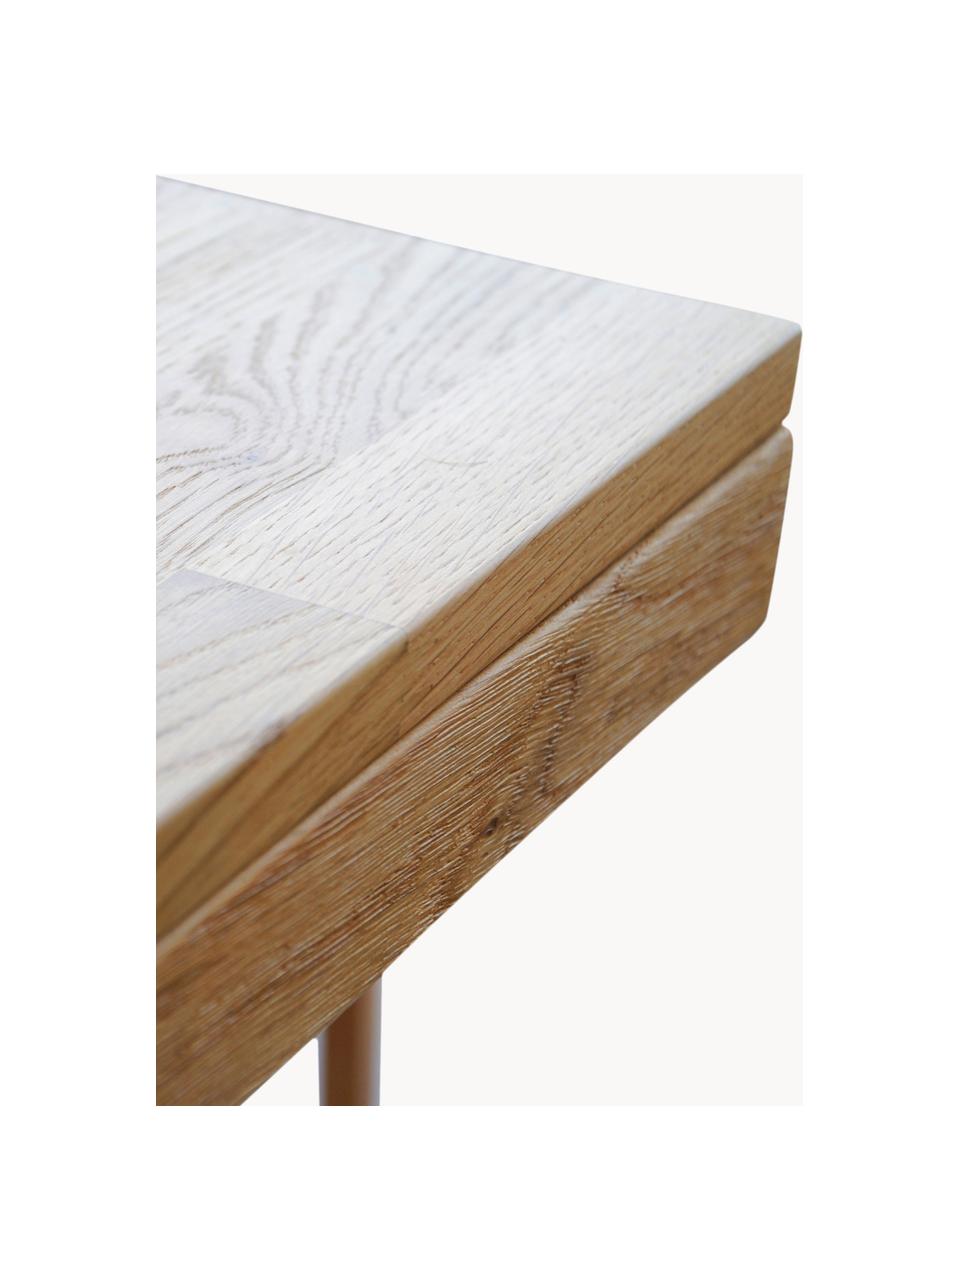 Verlängerbarer Esstisch Brooklyn aus Eichenholz, verschiedene Größen, Massives Eichenholz, gebürstet und klar lackiert

Dieses Produkt wird aus nachhaltig gewonnenem, FSC®-zertifiziertem Holz gefertigt., Eichenholz, B 170/220 x T 95 cm